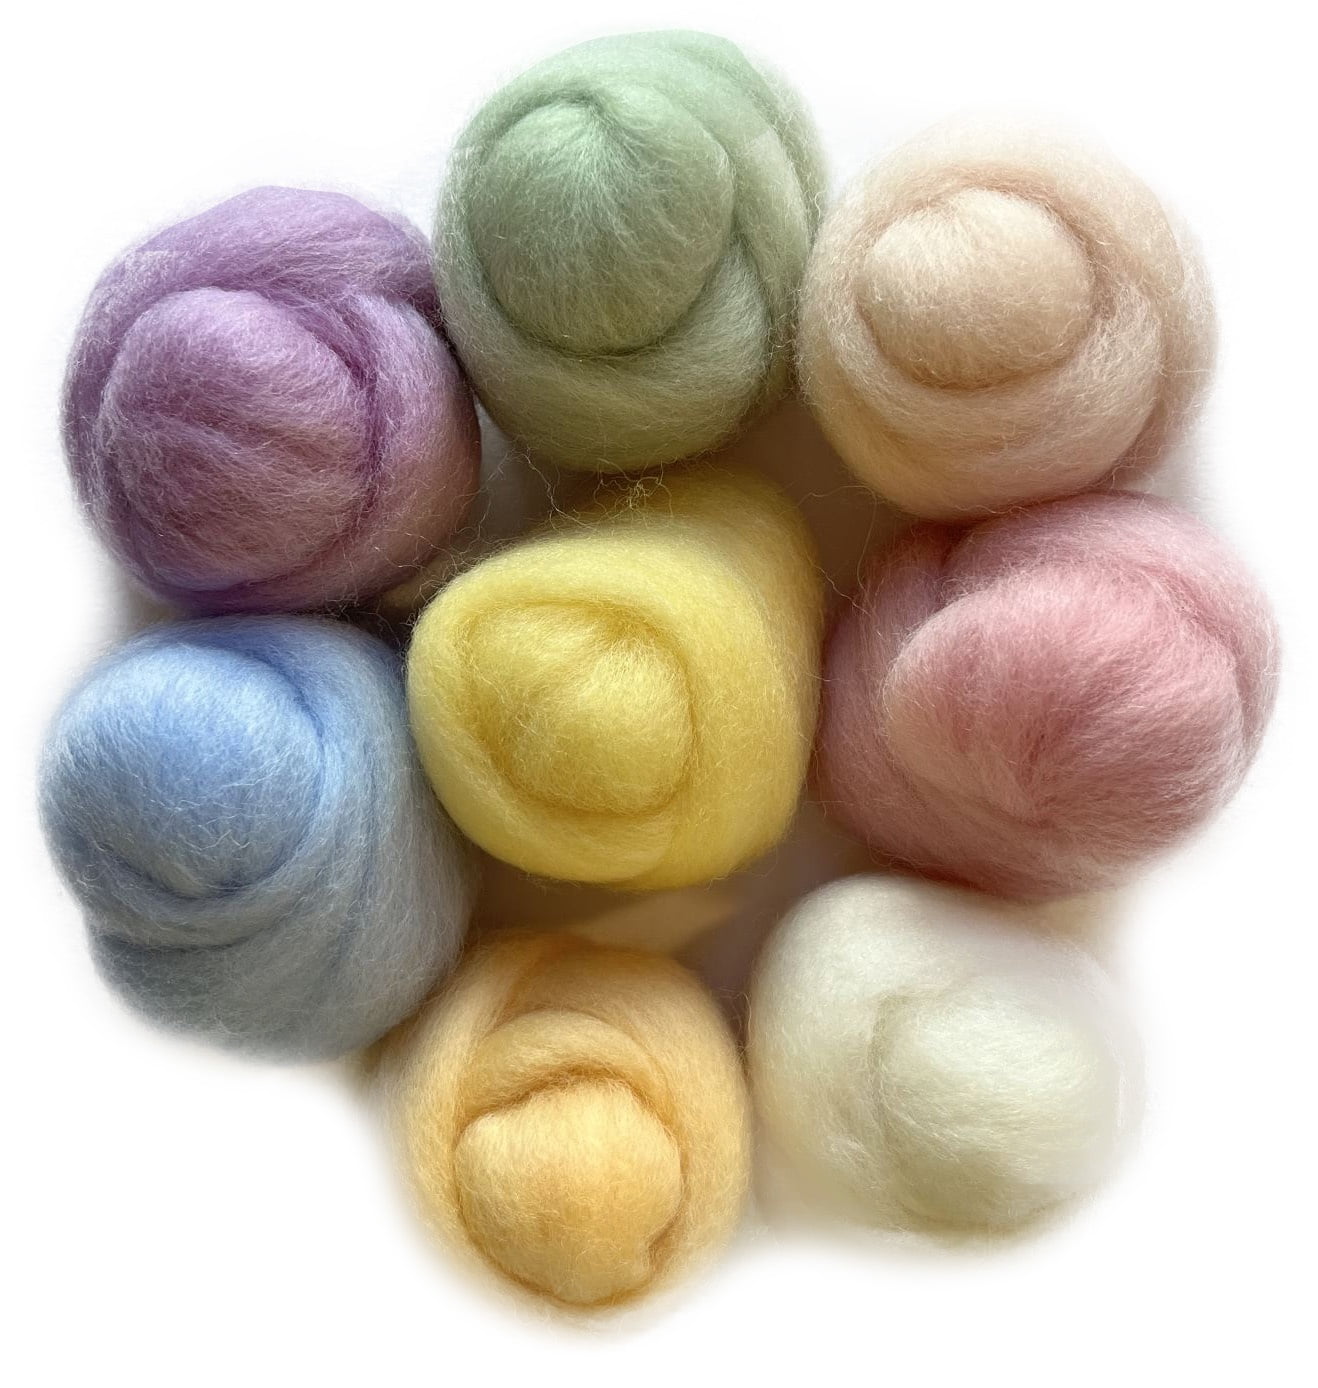 Wool Roving Assortment > Noel – Wistyria